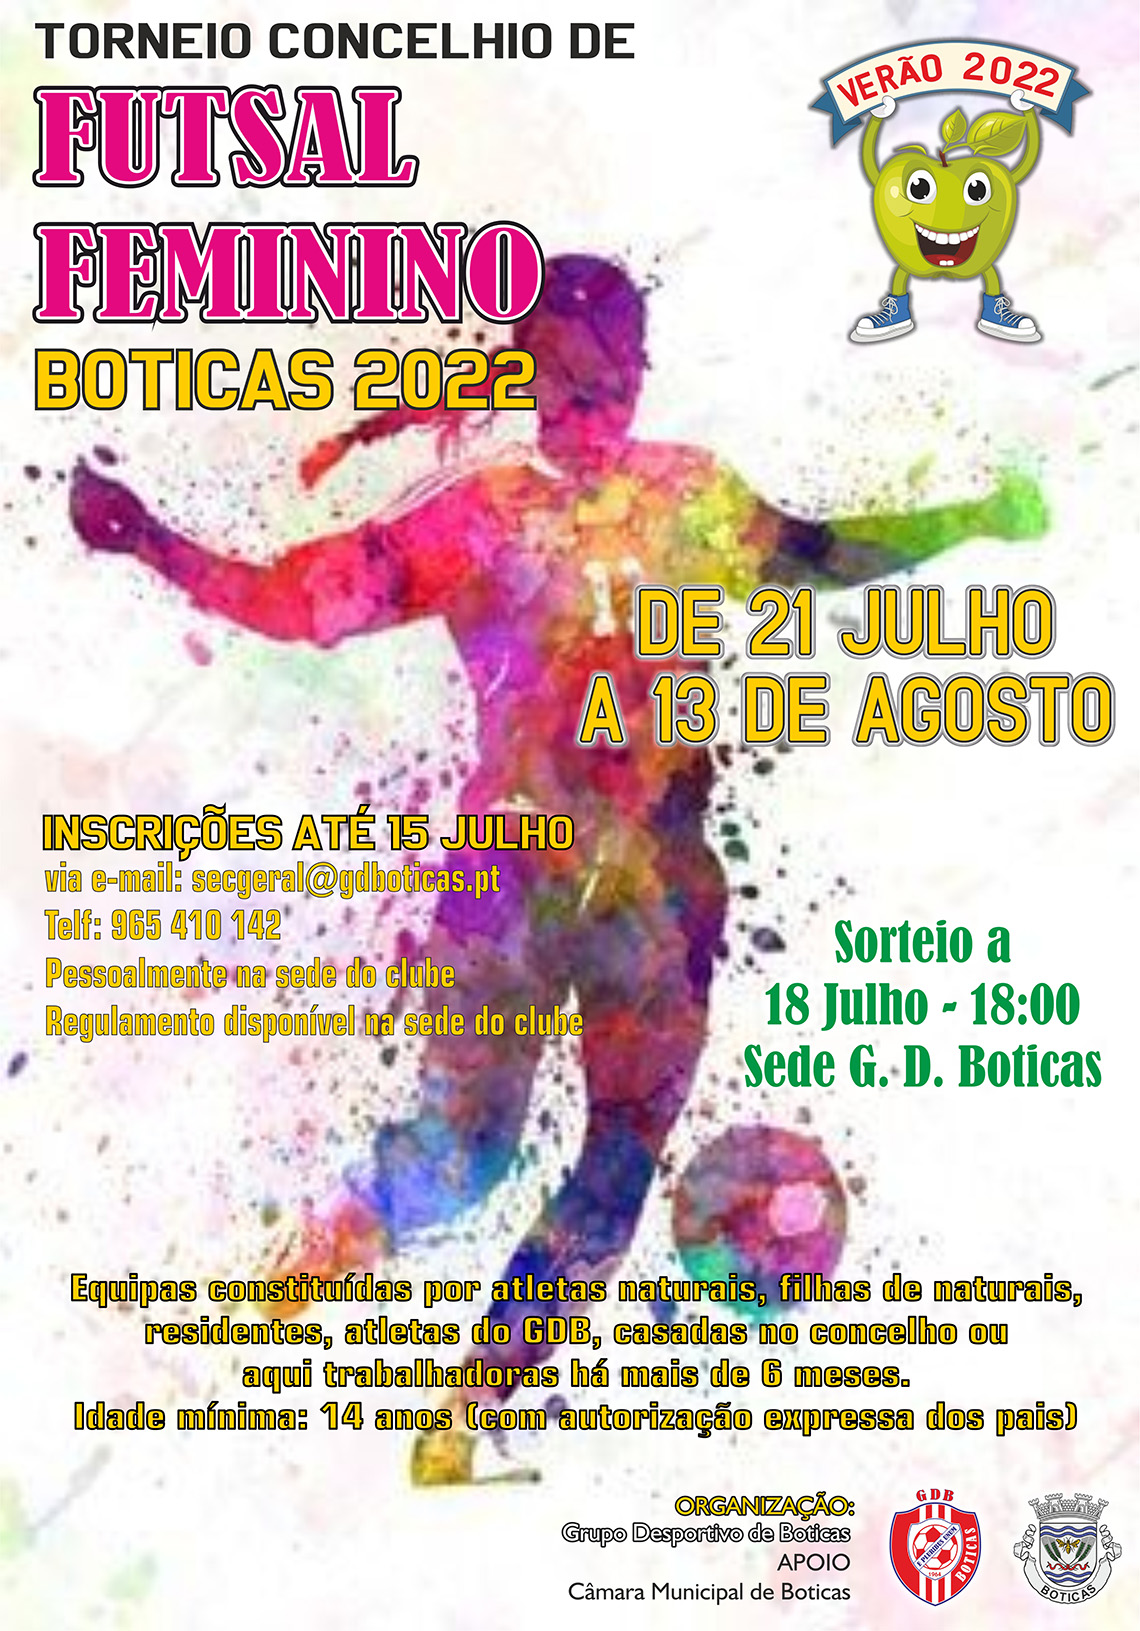 Torneio Concelhio de Futsal Feminino 2022